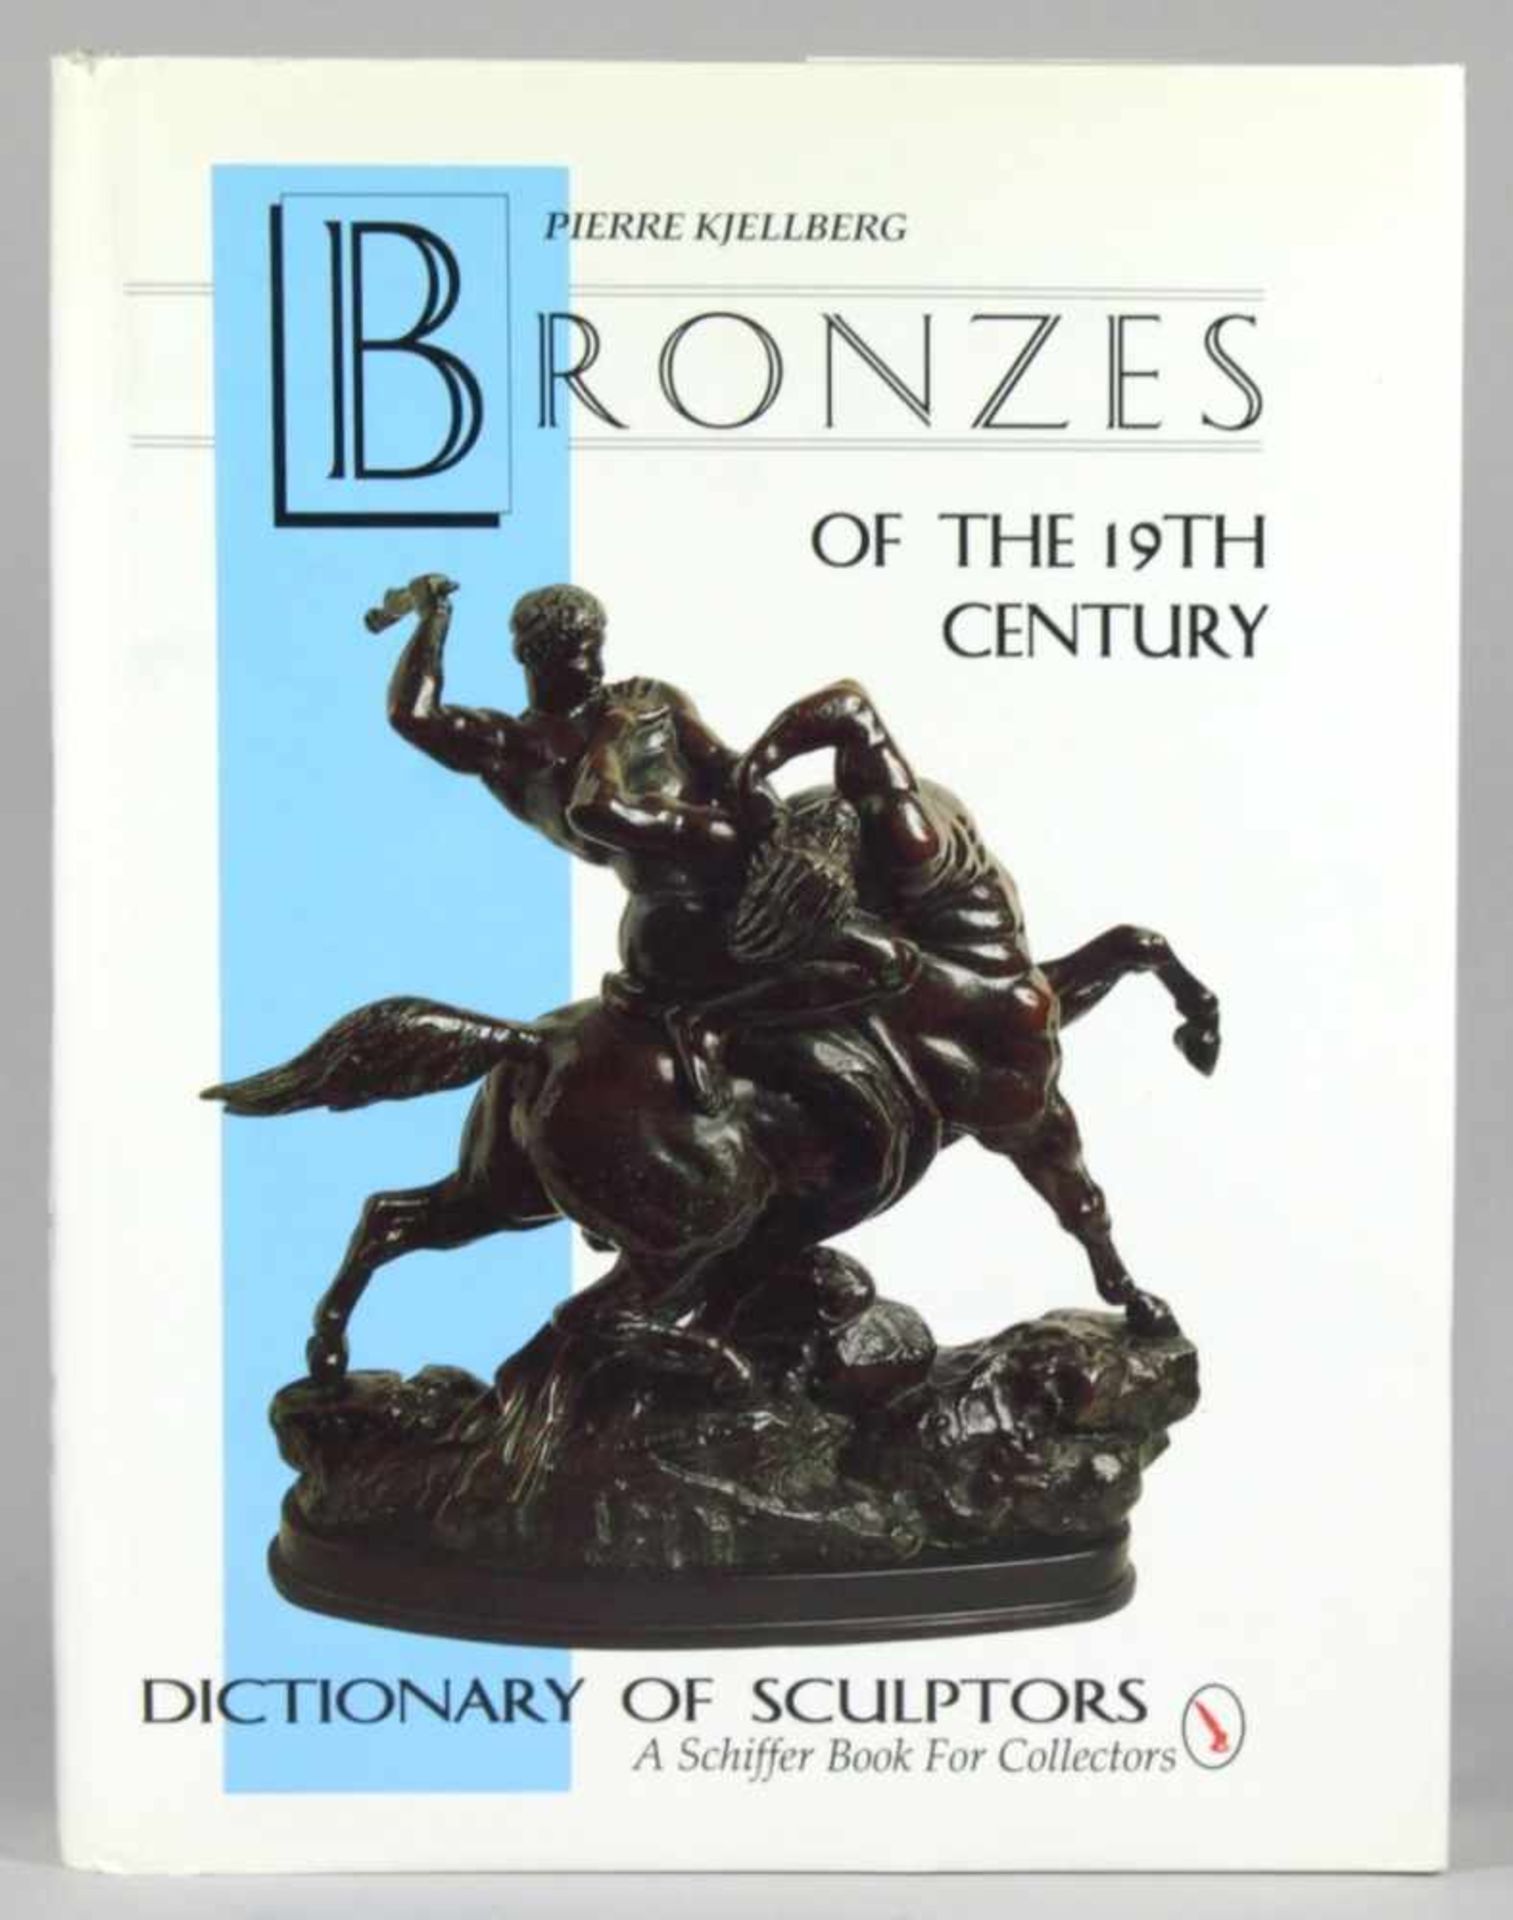 Buch, "Bronzes of the 19th Century", Pierre Kjellberg, Dictionary of Sculptors, inenglischer Sp